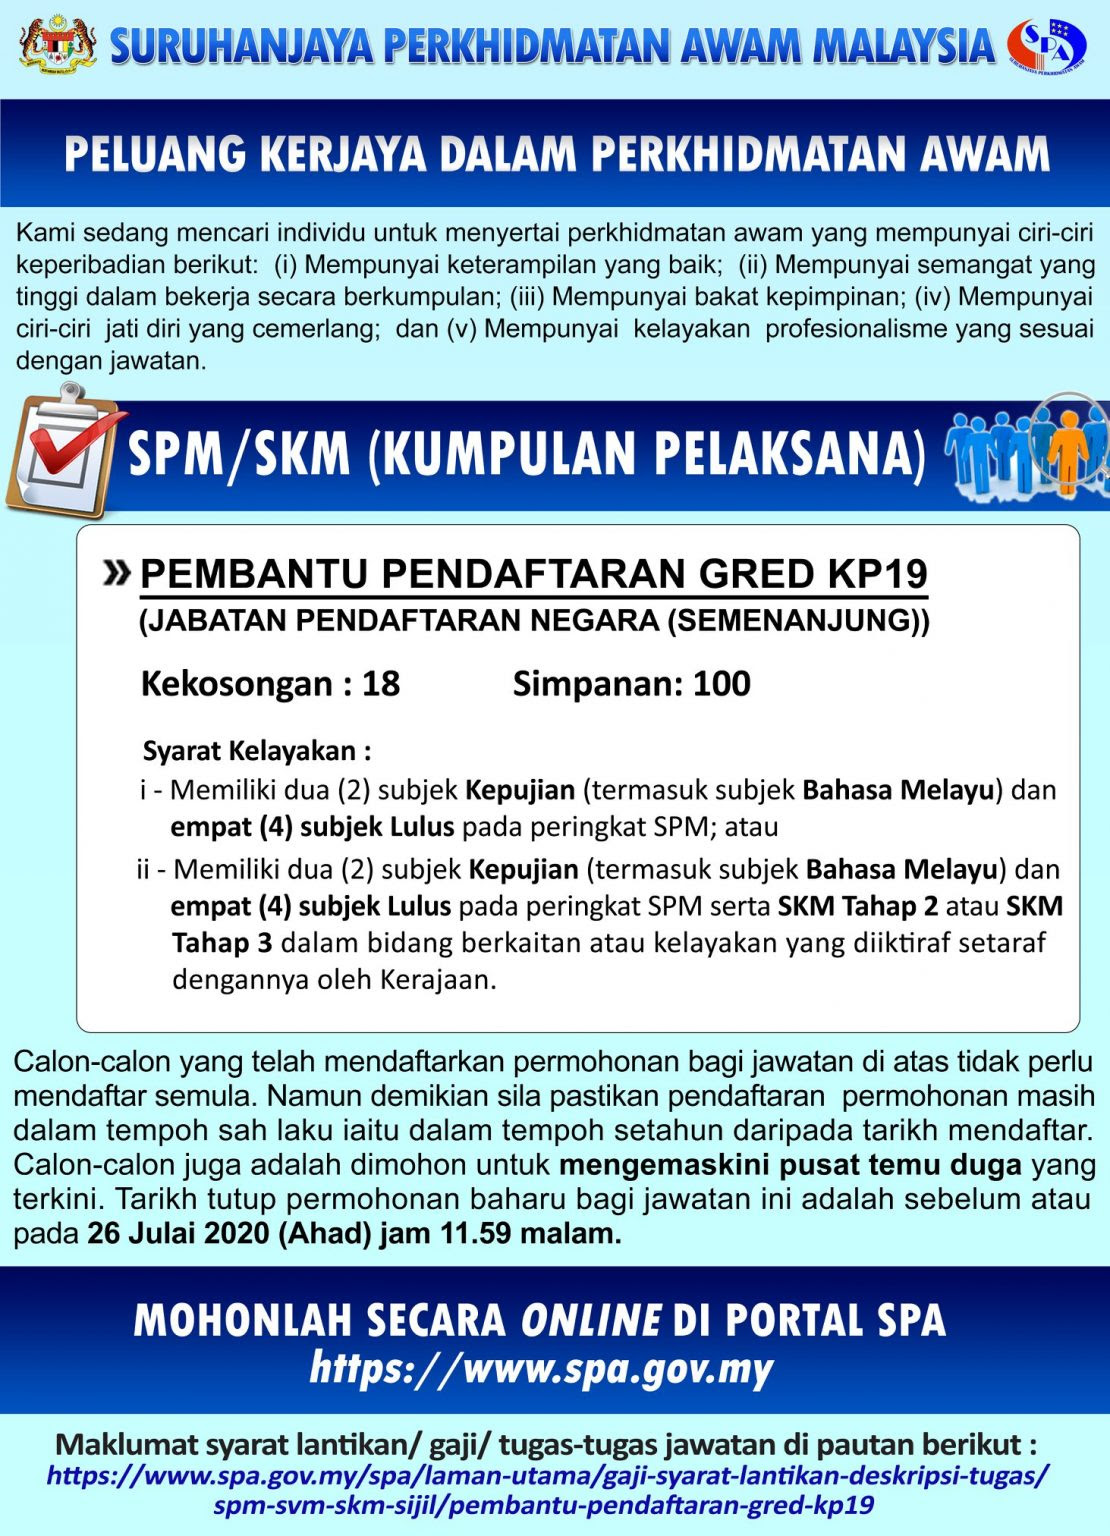 Jabatan Pendaftaran Negara Kelantan / Memasarkan maklumat berkaitan